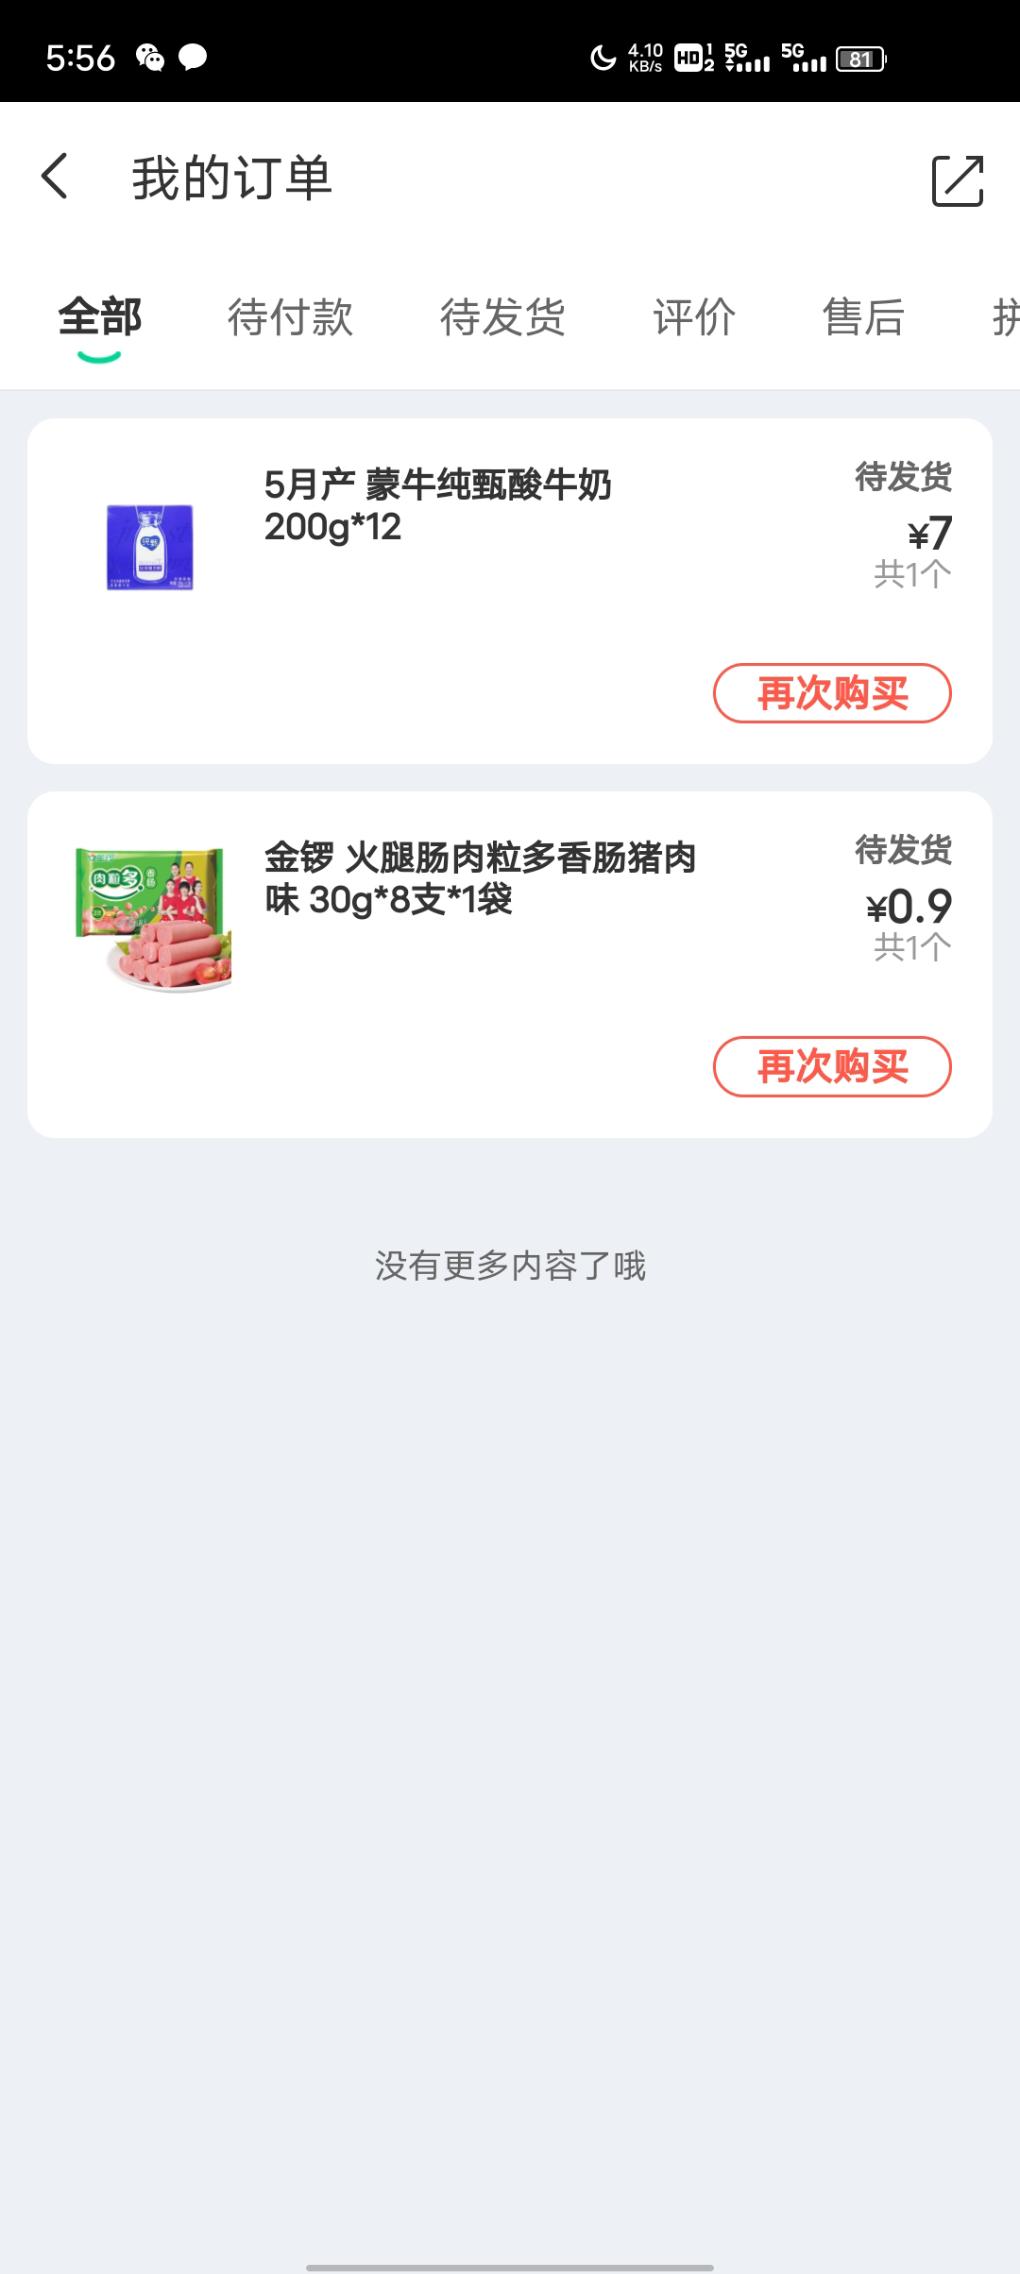 同程-20可以下酸奶-19买12盒-惠小助(52huixz.com)